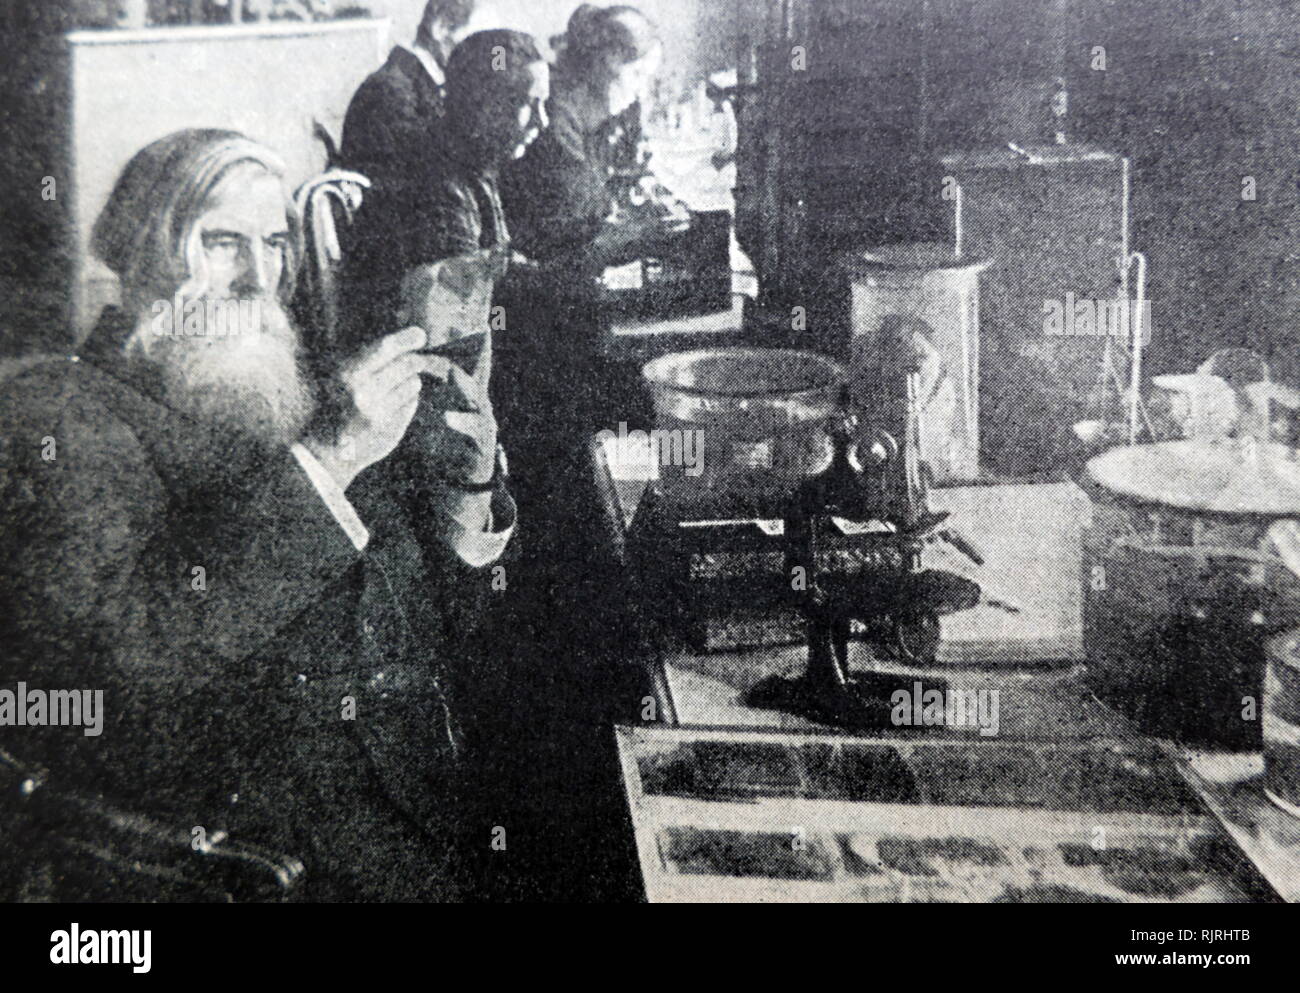 Wladimir Michailowitsch Bechterew (1857-1927) russischer Neurologe und der Vater von objektiven Psychologie. Er ist am besten für die Rolle des Hippocampus im Speicher bekannt, seine Studie von Reflexen, und Morbus Bechterew. Darüber hinaus ist er für seine Konkurrenz mit Ivan Pavlov in Bezug auf die Studie der bedingten Reflexe bekannt. Stockfoto